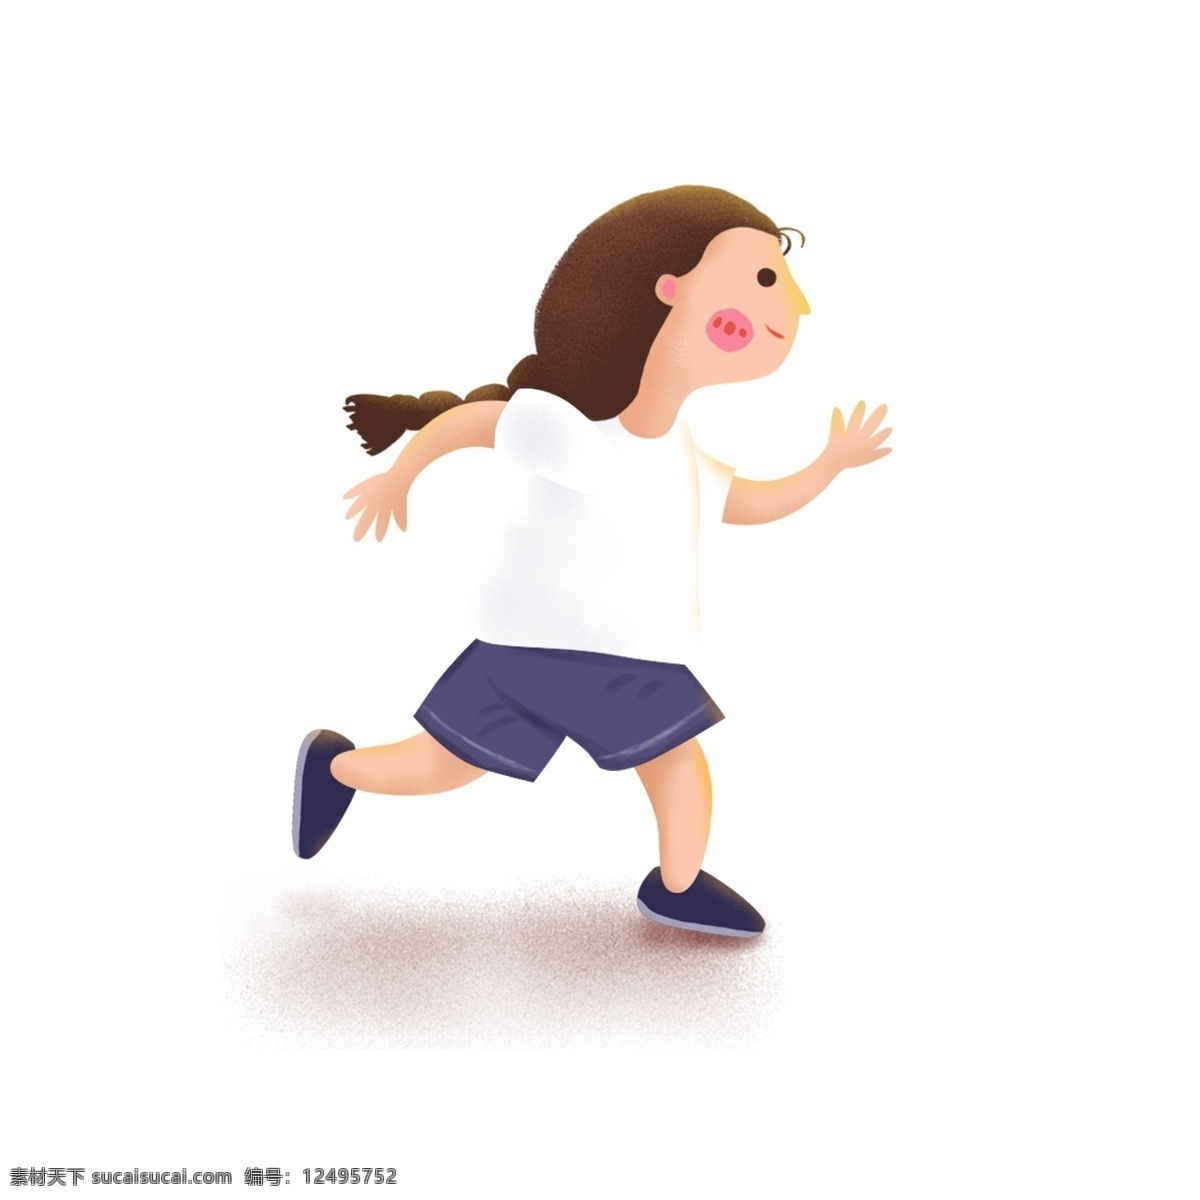 奔跑 可爱 小女孩 卡通 元素 跑步 运动 休闲